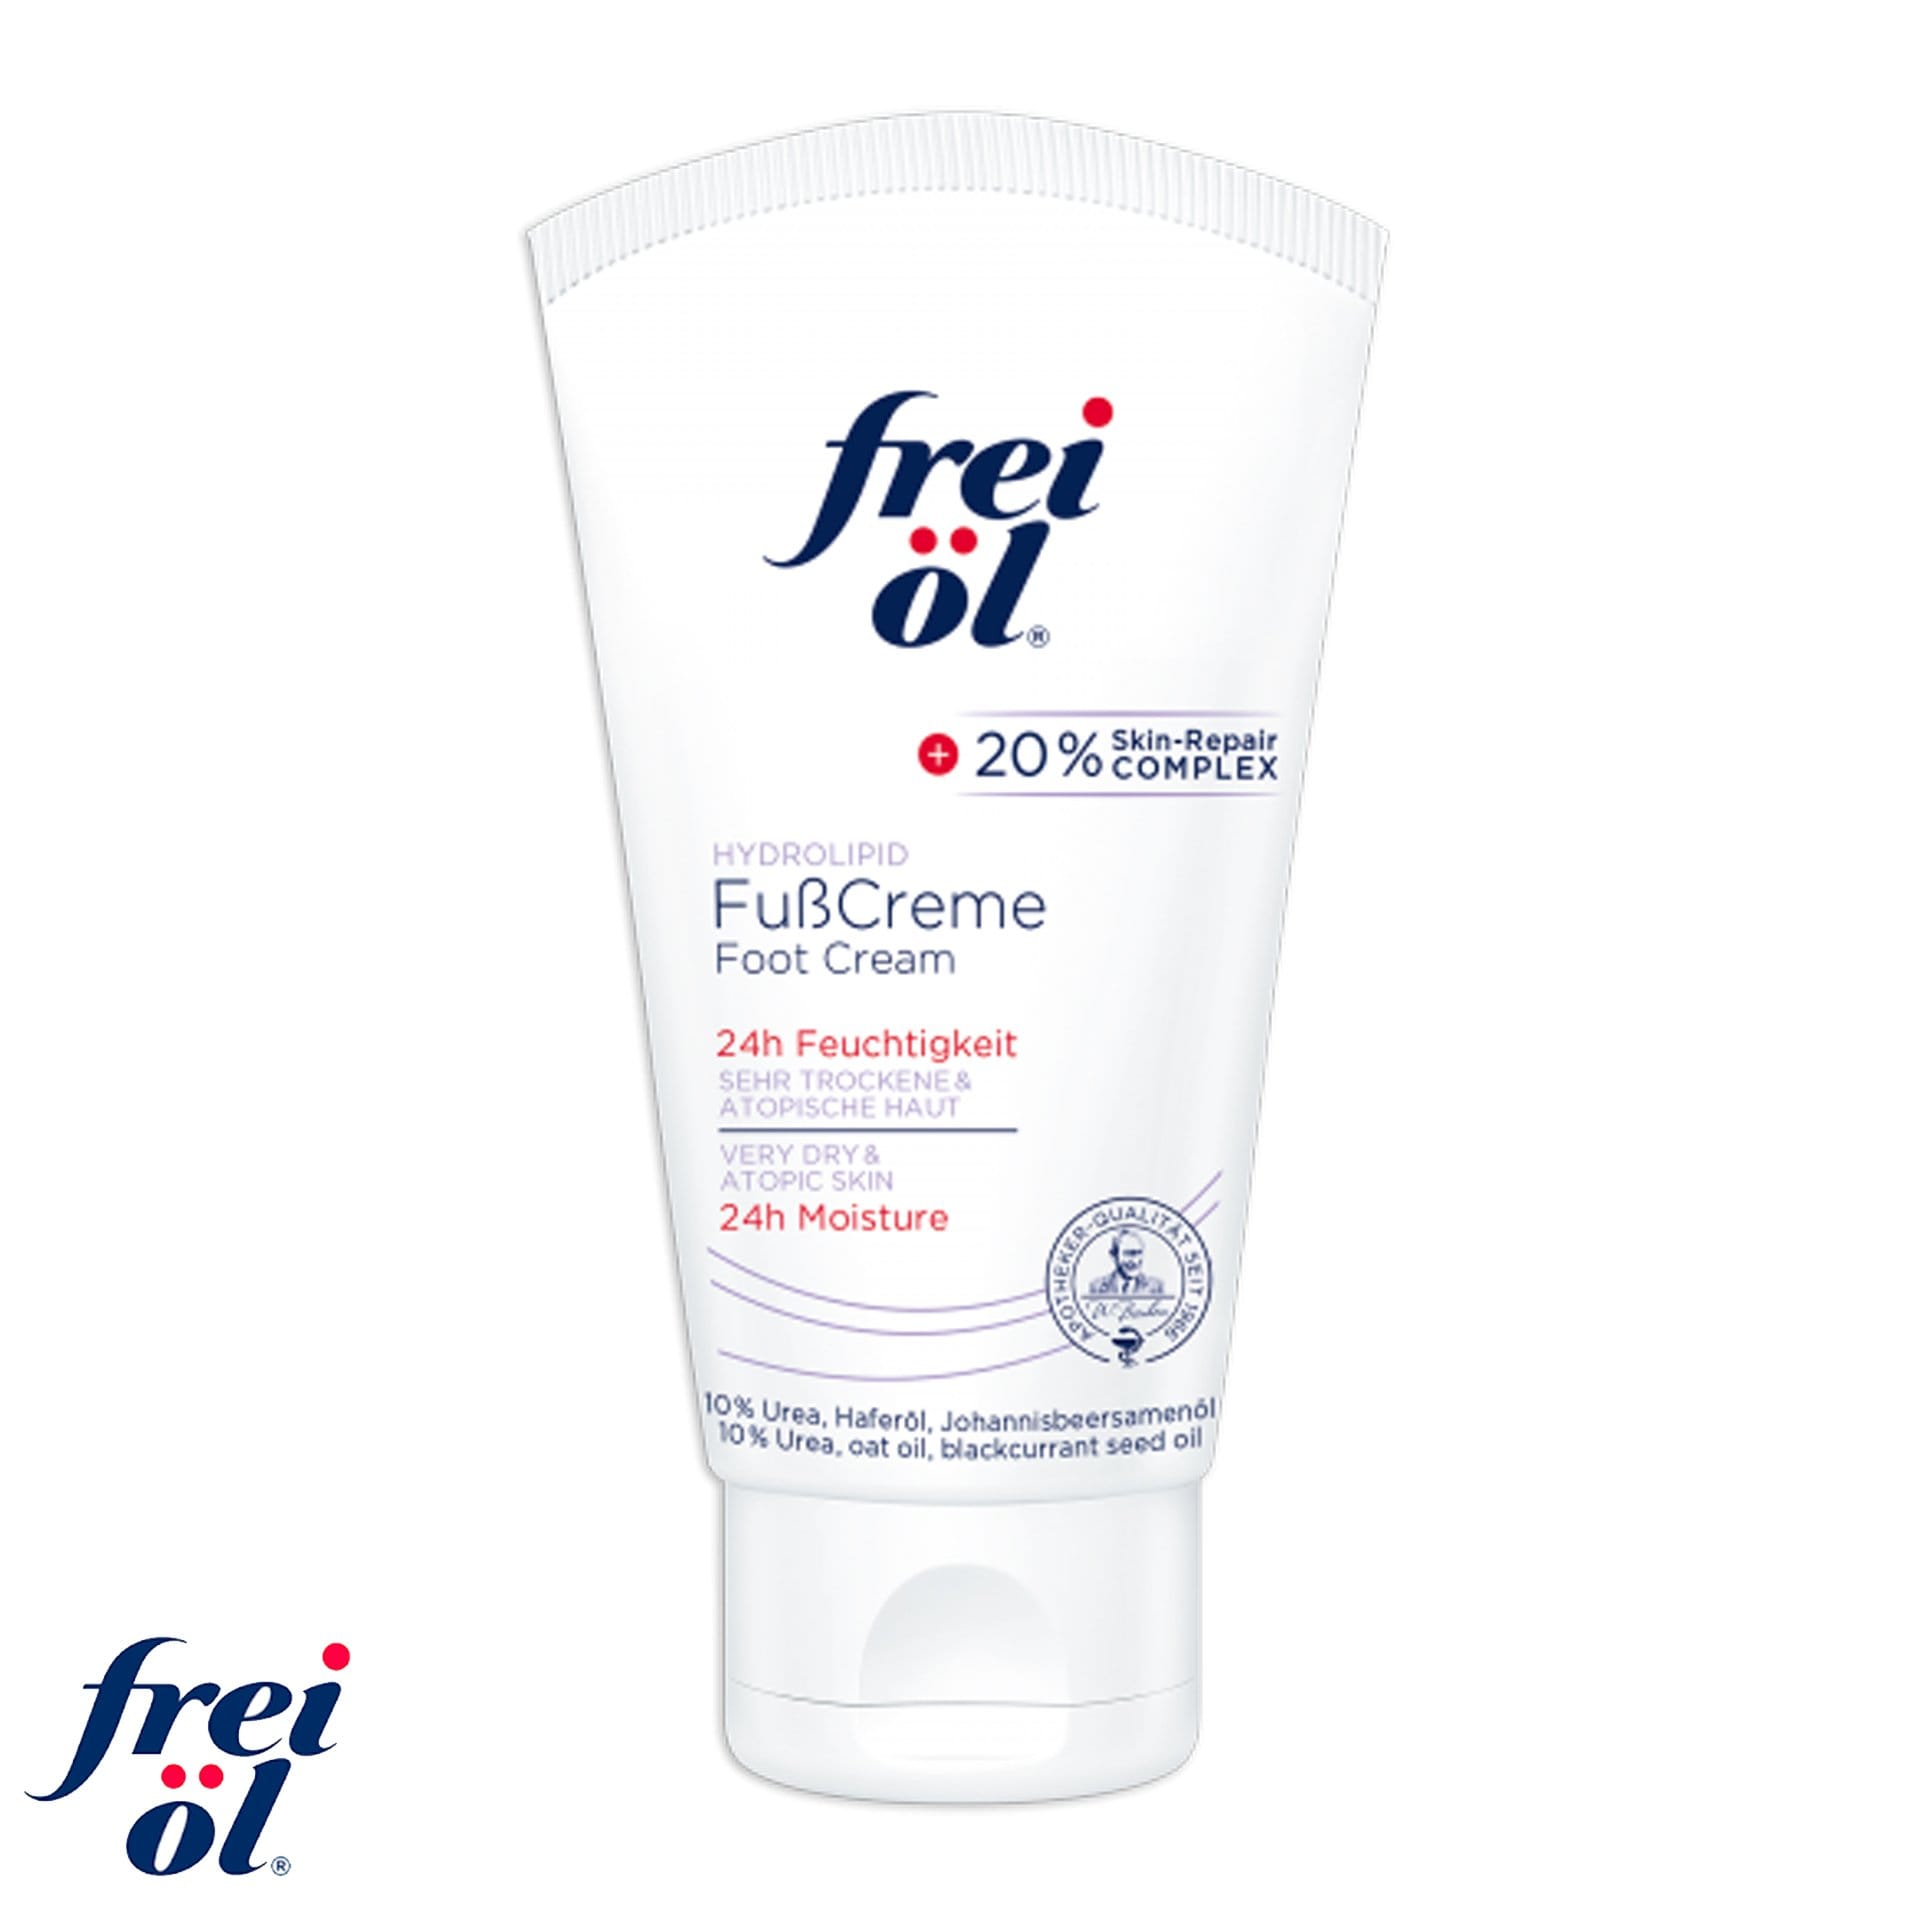 Frei Ol Hydrolipid Foot Cream